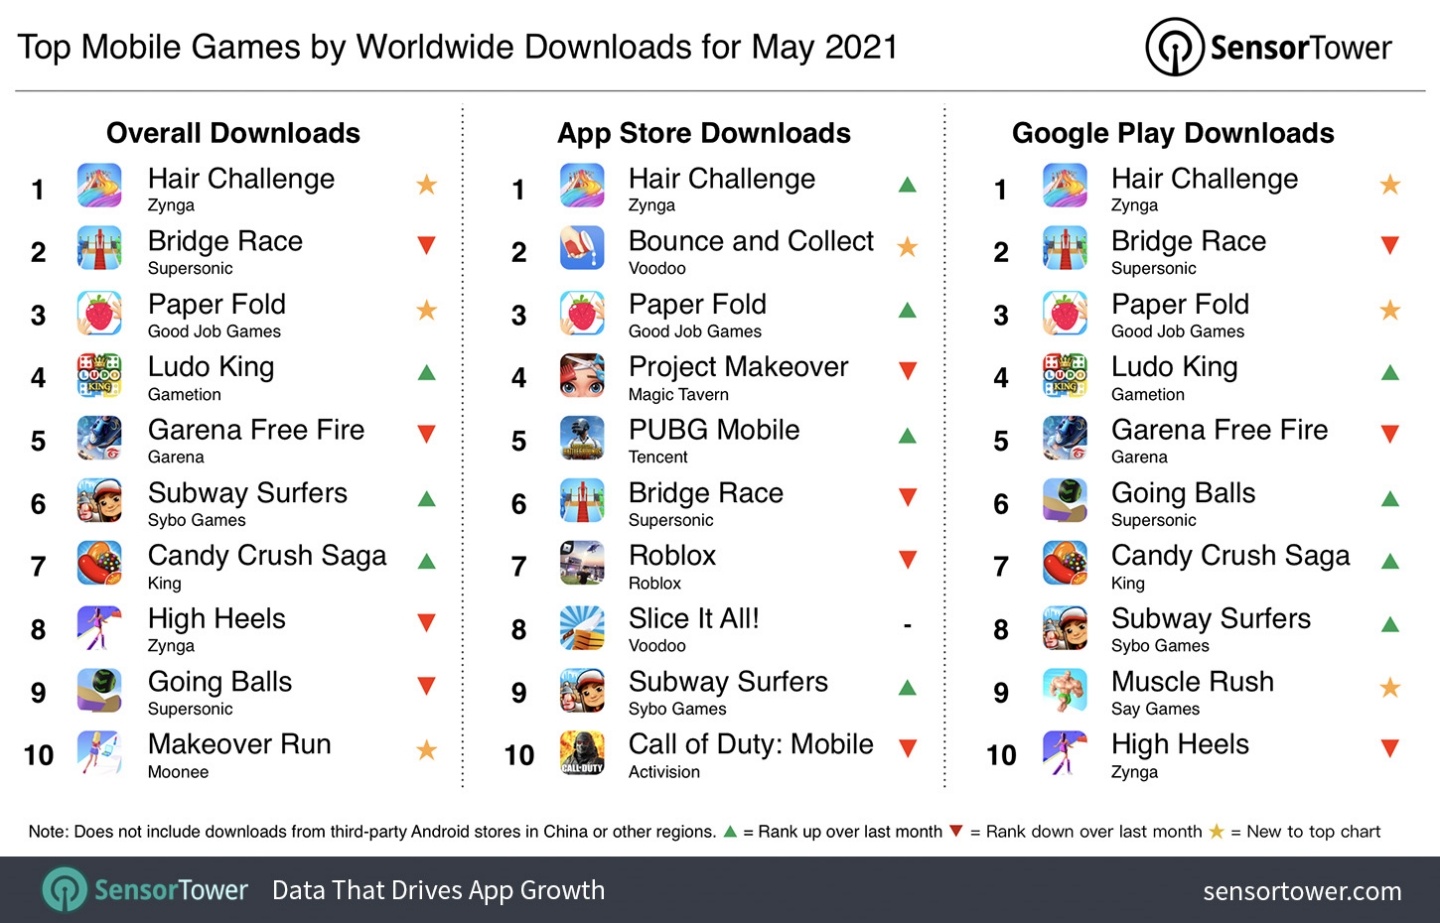 5 月全球下載量最高的 App 竟是獵奇的『 頭髮 』遊戲？營收最高則是『 王者榮耀 』